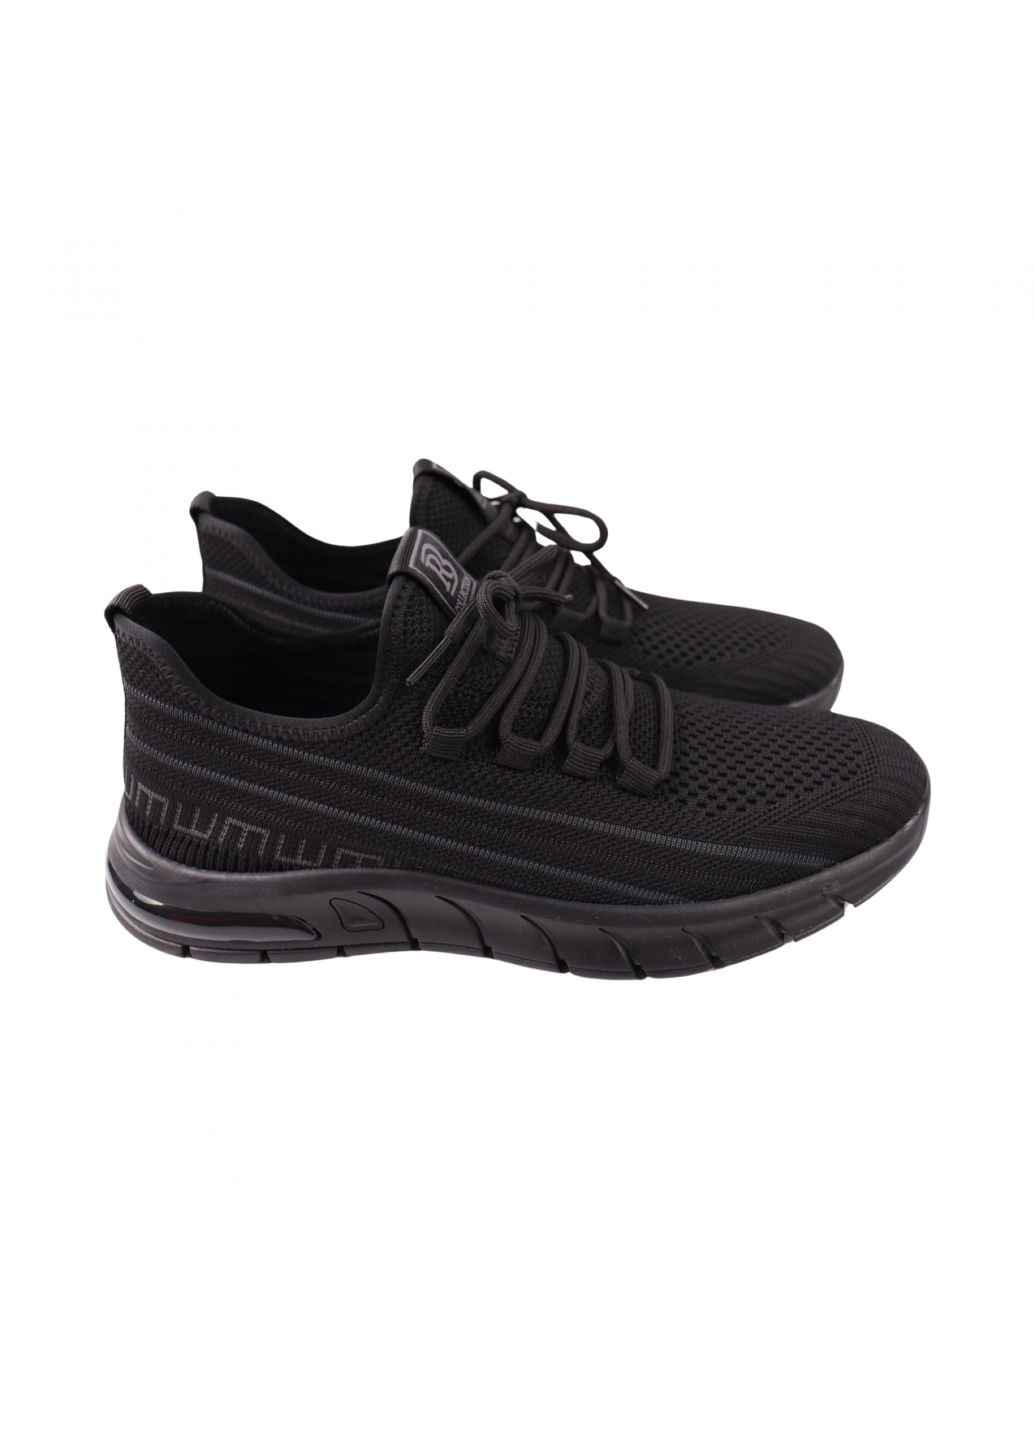 Черные кроссовки мужские черные текстиль Berisstini 251-24LK